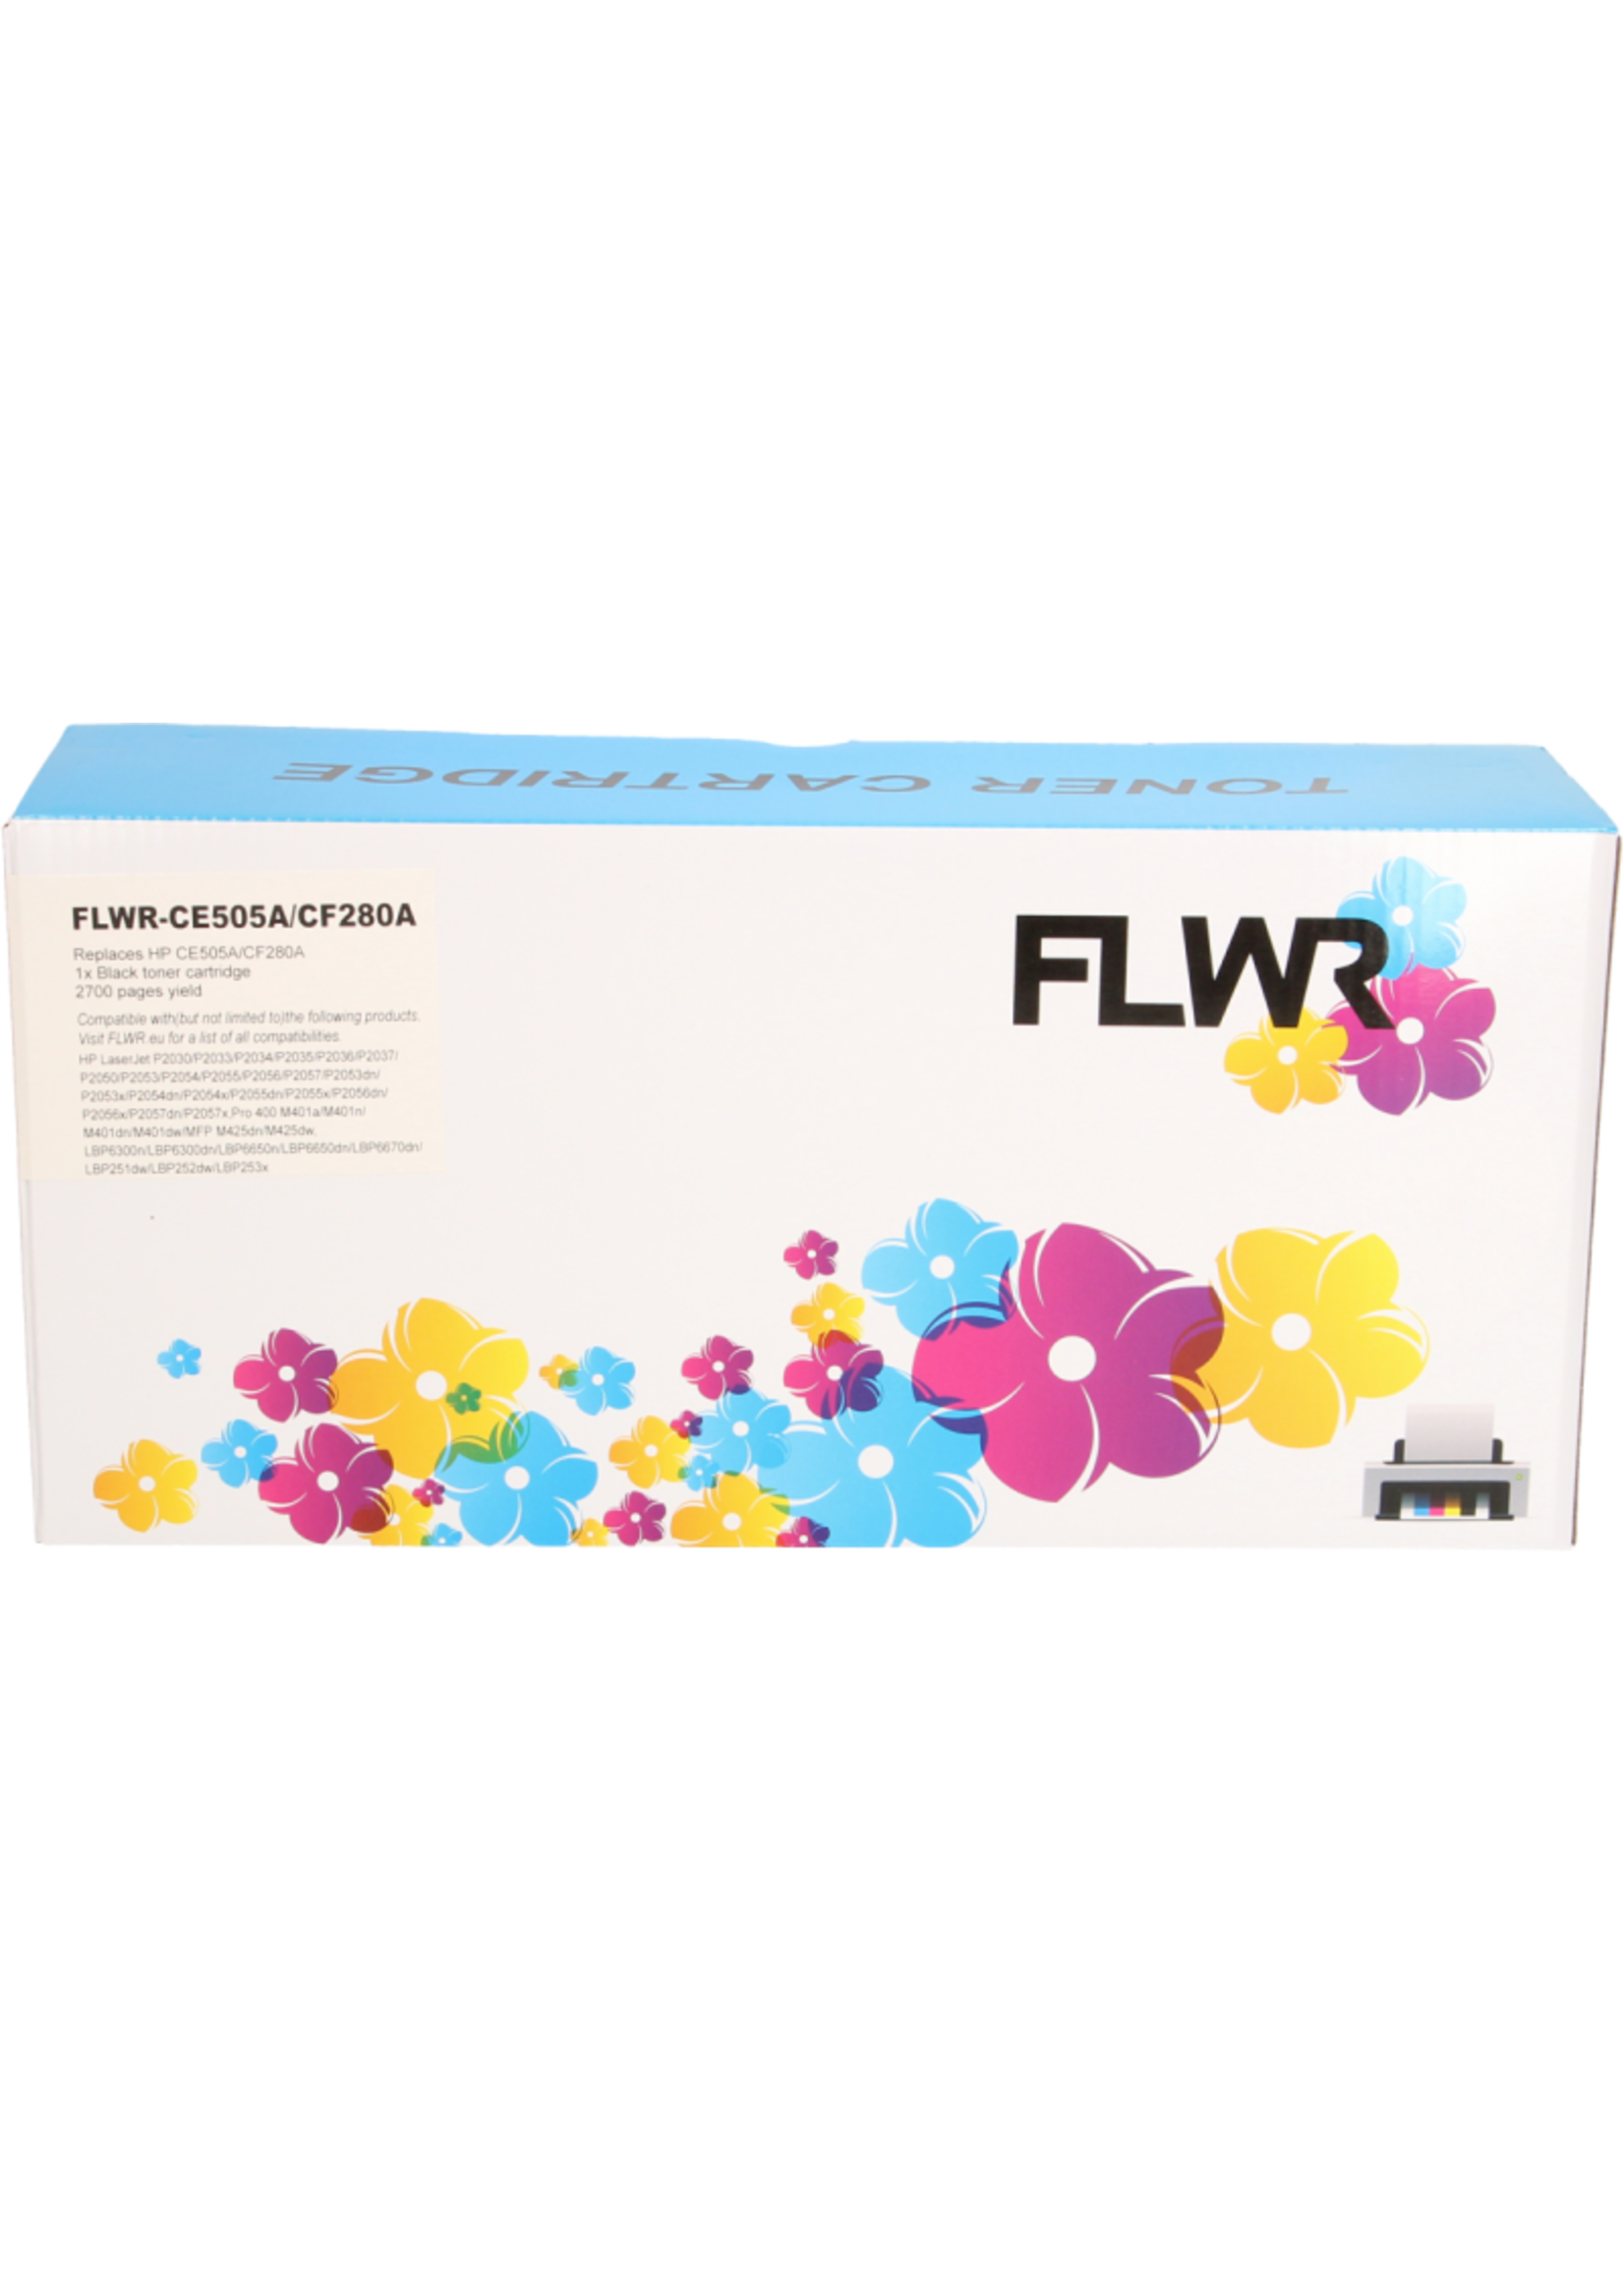 FLWR! FLWR - Toners / HP CE505A / CF280A / zwart / Geschikt voor HP